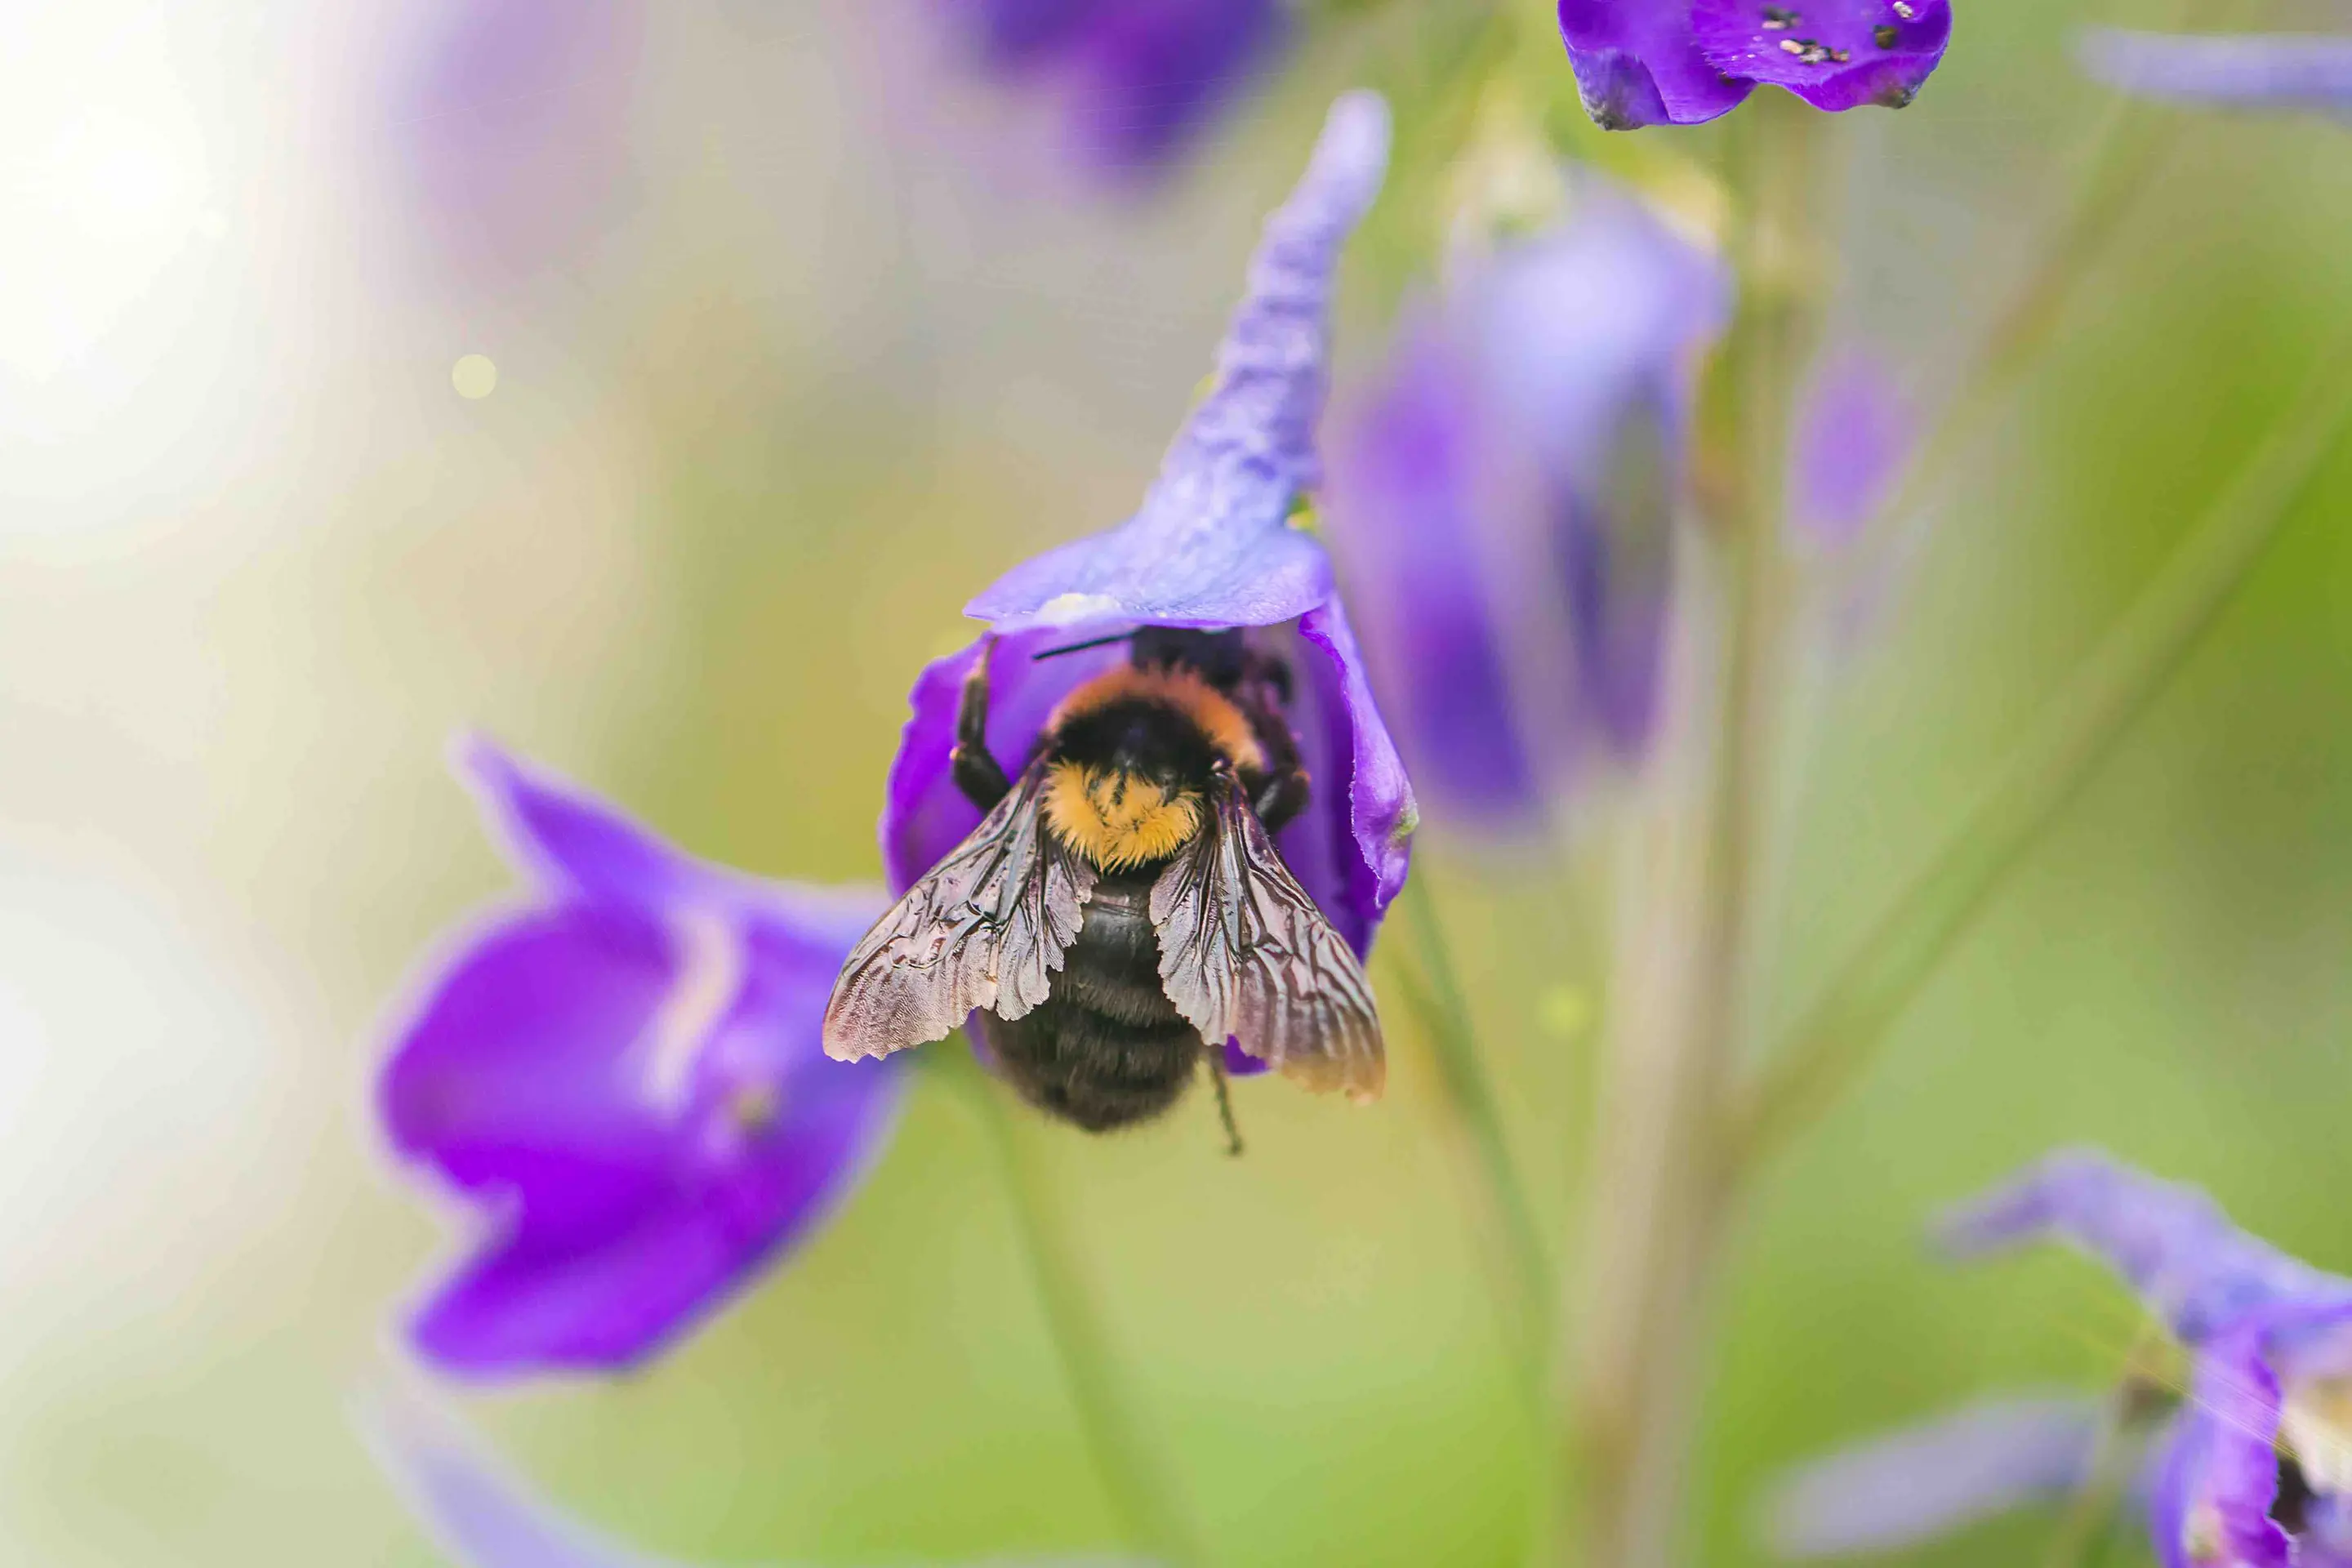 A bumblebee landing on a purple flower.